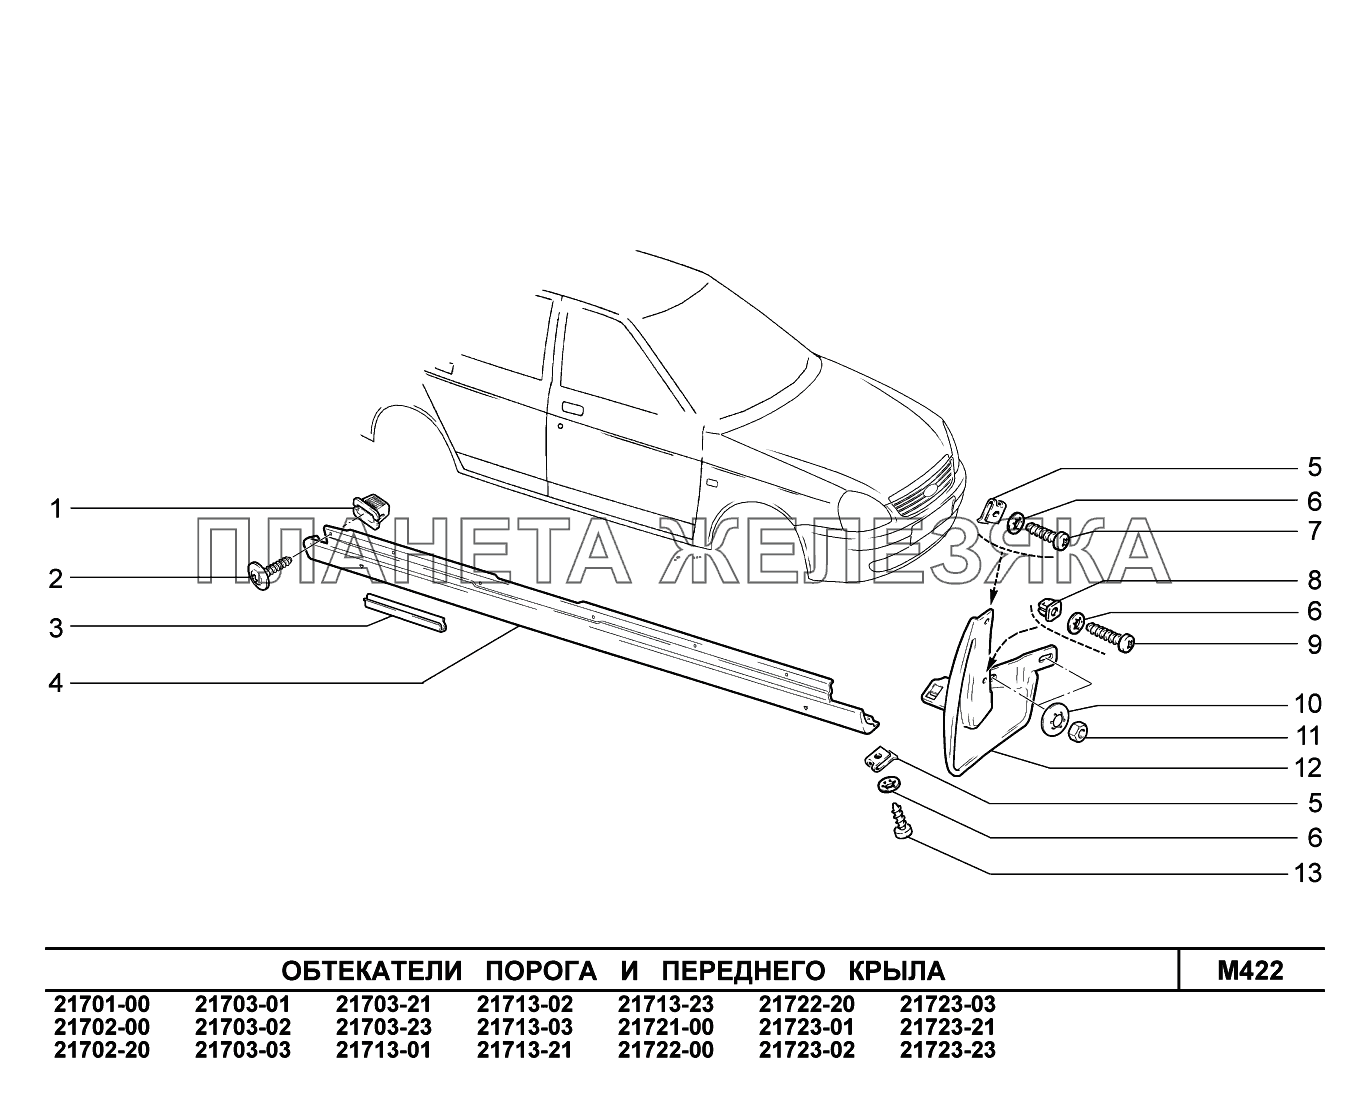 M422. Обтекатели порога и переднего крыла ВАЗ-2170 